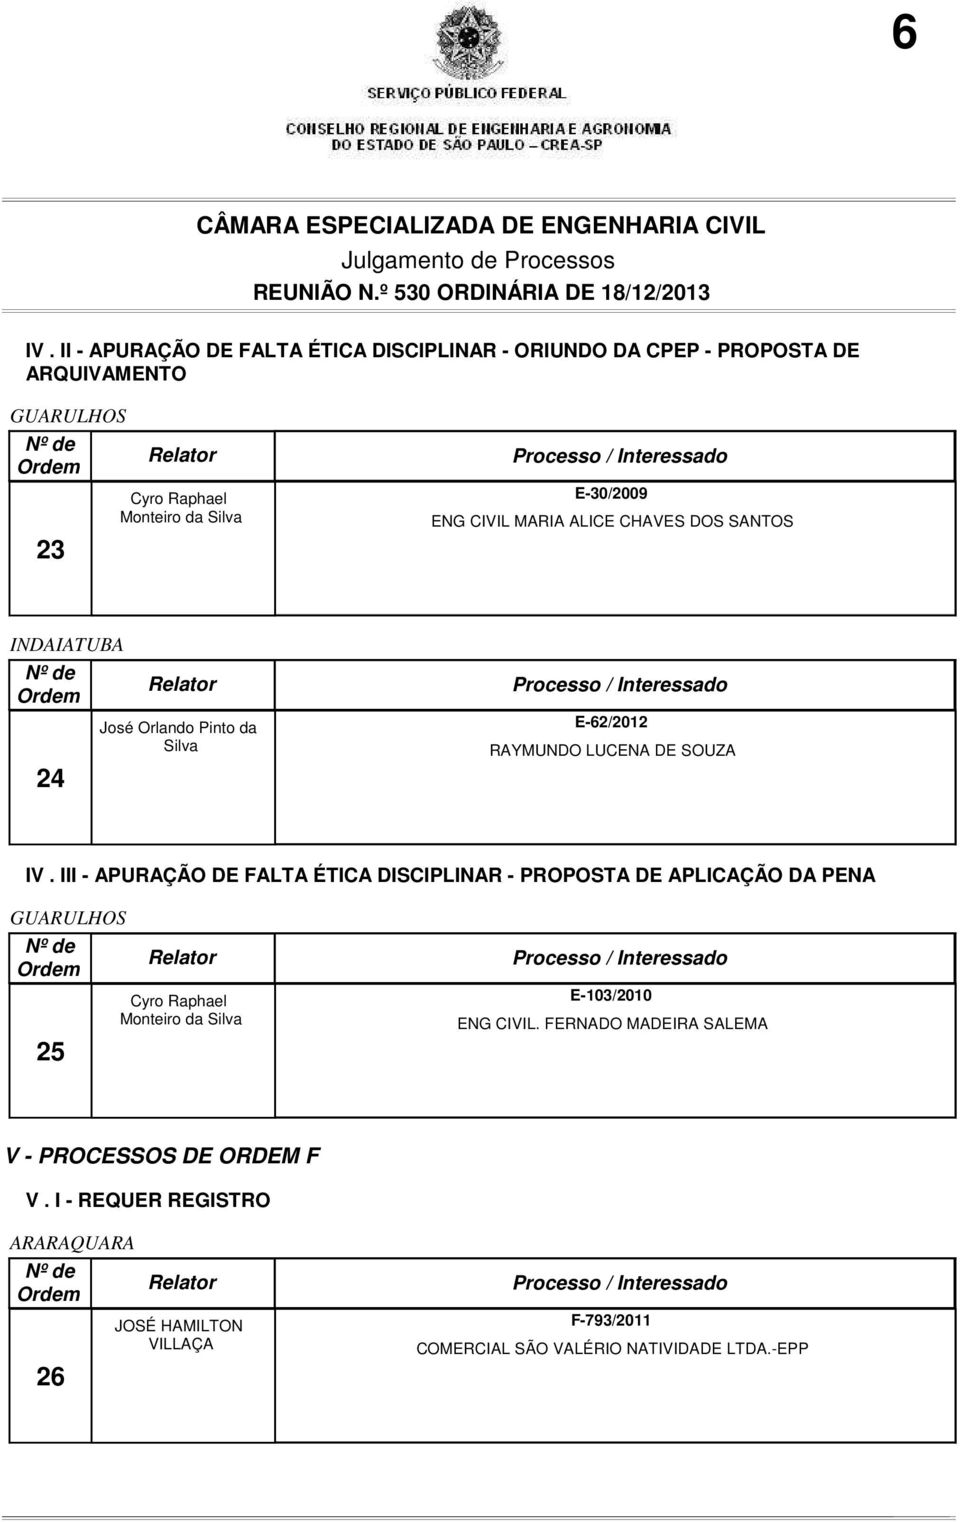 III - APURAÇÃO DE FALTA ÉTICA DISCIPLINAR - PROPOSTA DE APLICAÇÃO DA PENA GUARULHOS 25 E-103/2010 ENG CIVIL.